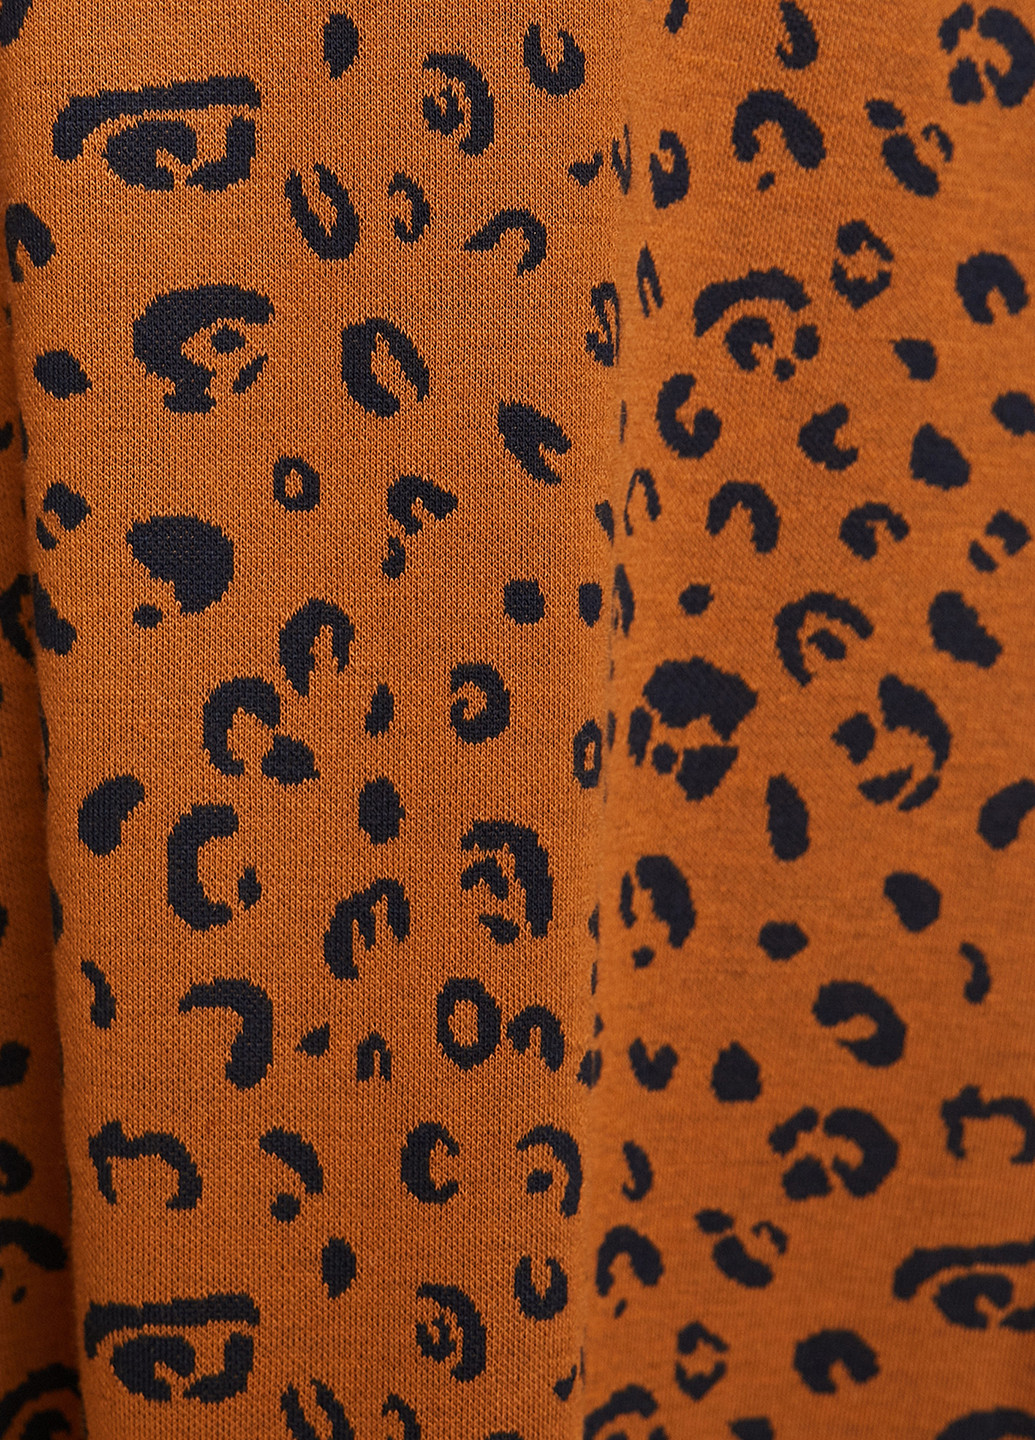 Горчичная кэжуал леопардовая юбка KOTON а-силуэта (трапеция)